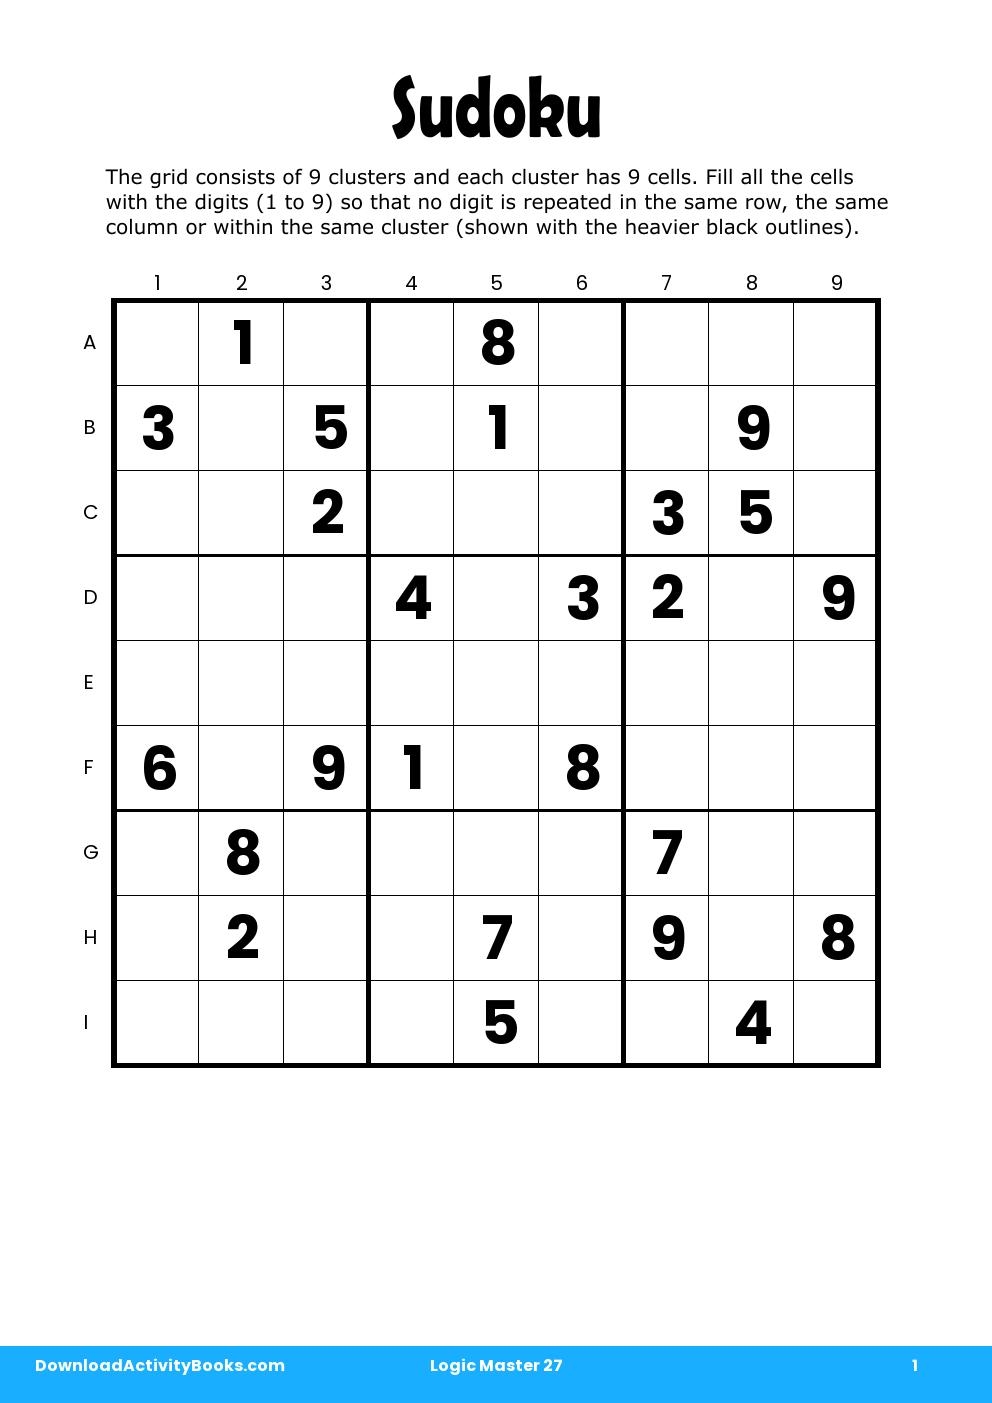 Sudoku in Logic Master 27